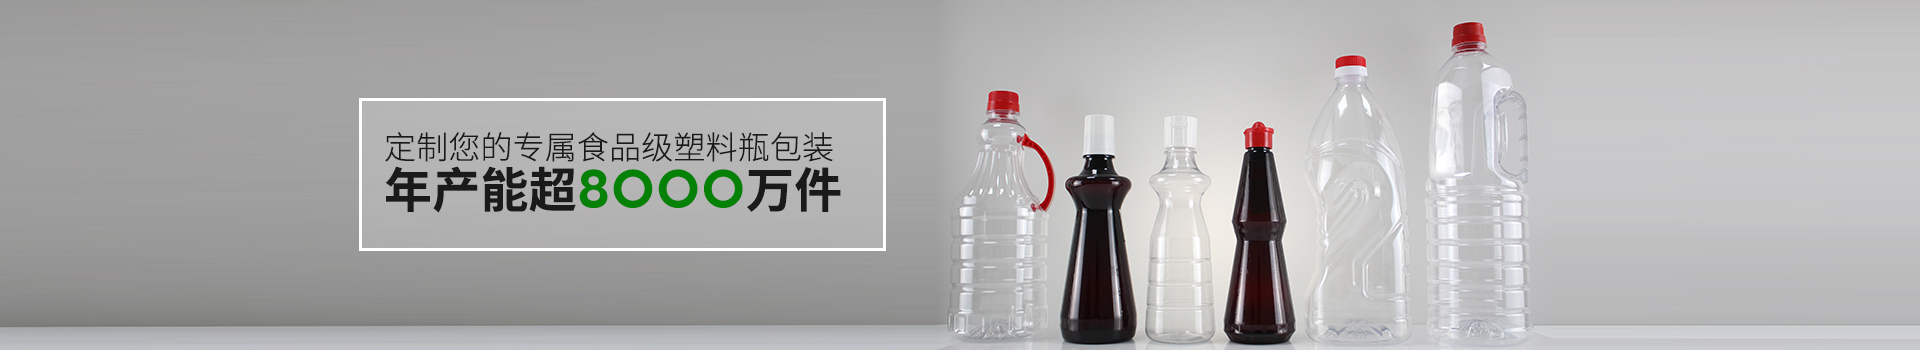 恒茂包裝-定制您的專屬食品級塑料瓶包裝 年產能超8000萬件